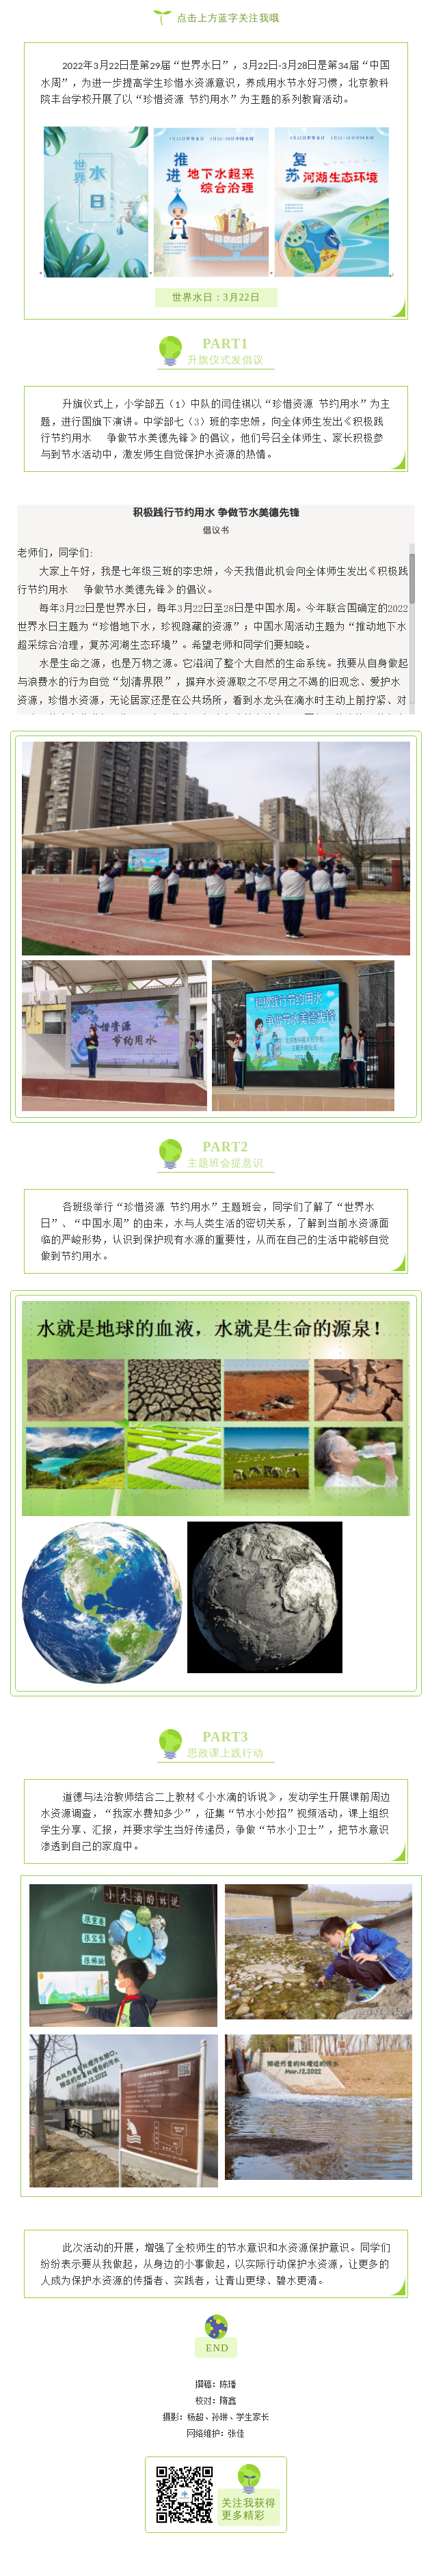 20220323“珍惜资源 节约用水” ——北京教科院丰台学校节水教育活动